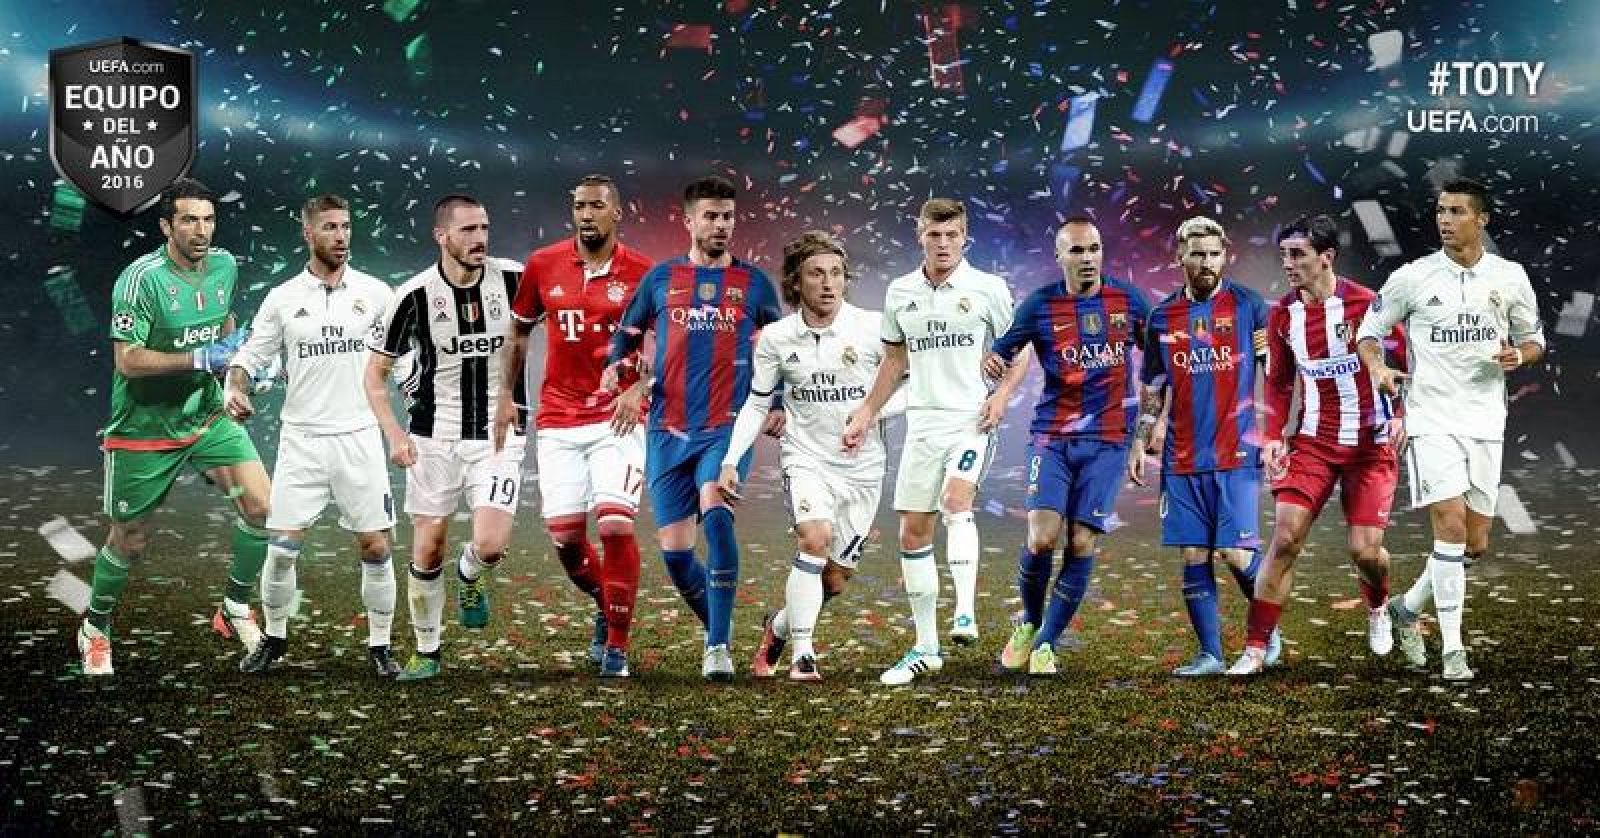 La con ocho futbolistas, copa el equipo del año de la UEFA -